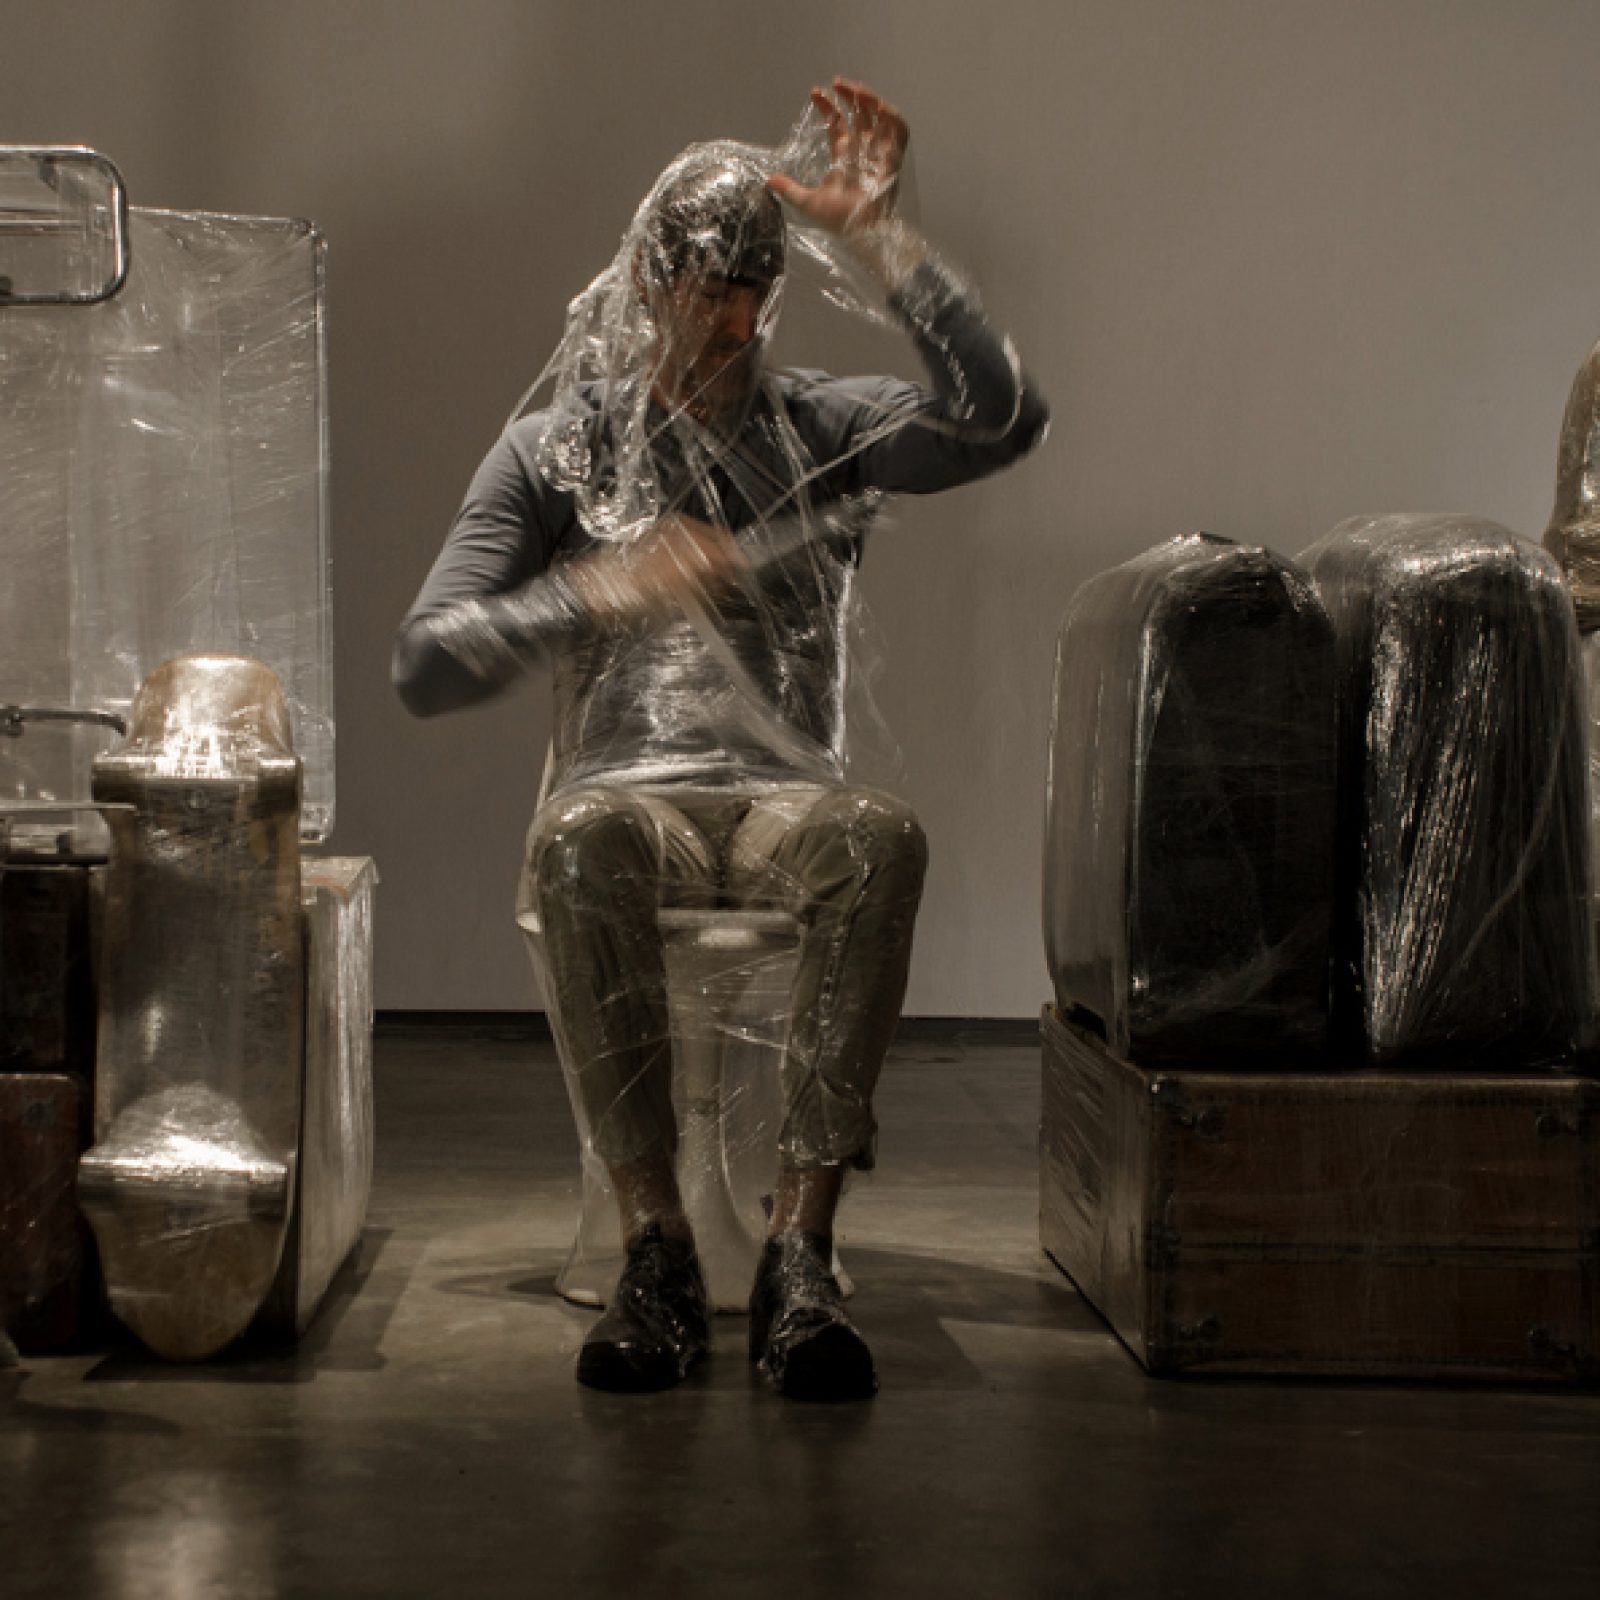 Crisálida, instalación/performance de Pepe López, 2017. Vista de la exposición "Escape Room" en Espacio Monitor, Caracas. Foto: Julio Osorio